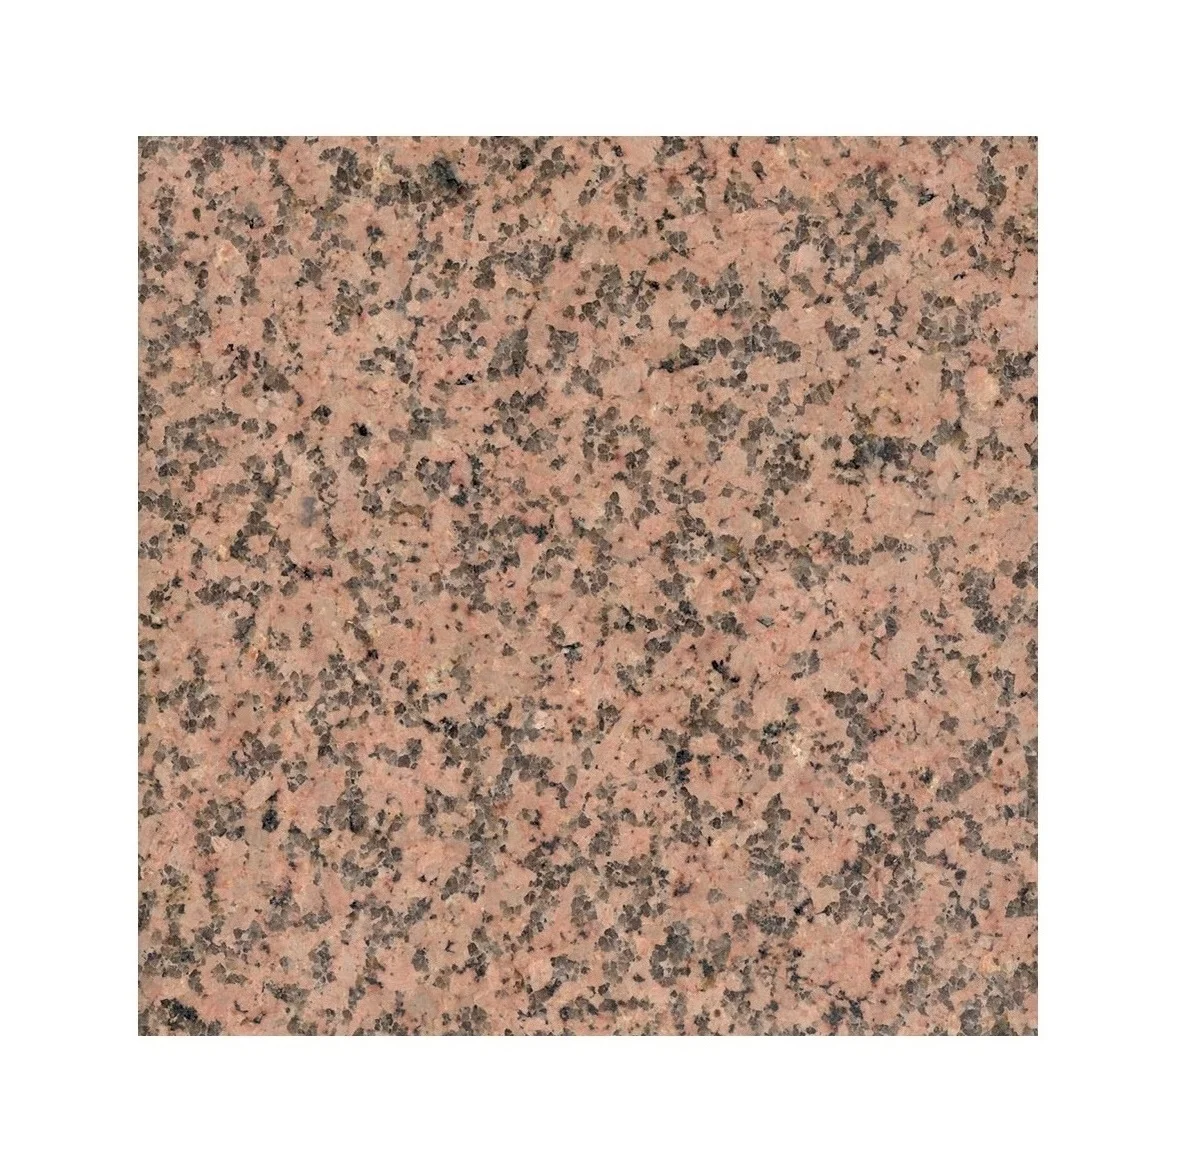 60*60*3 Thermo Granite Tile for Interior Cladding Facade Decoration